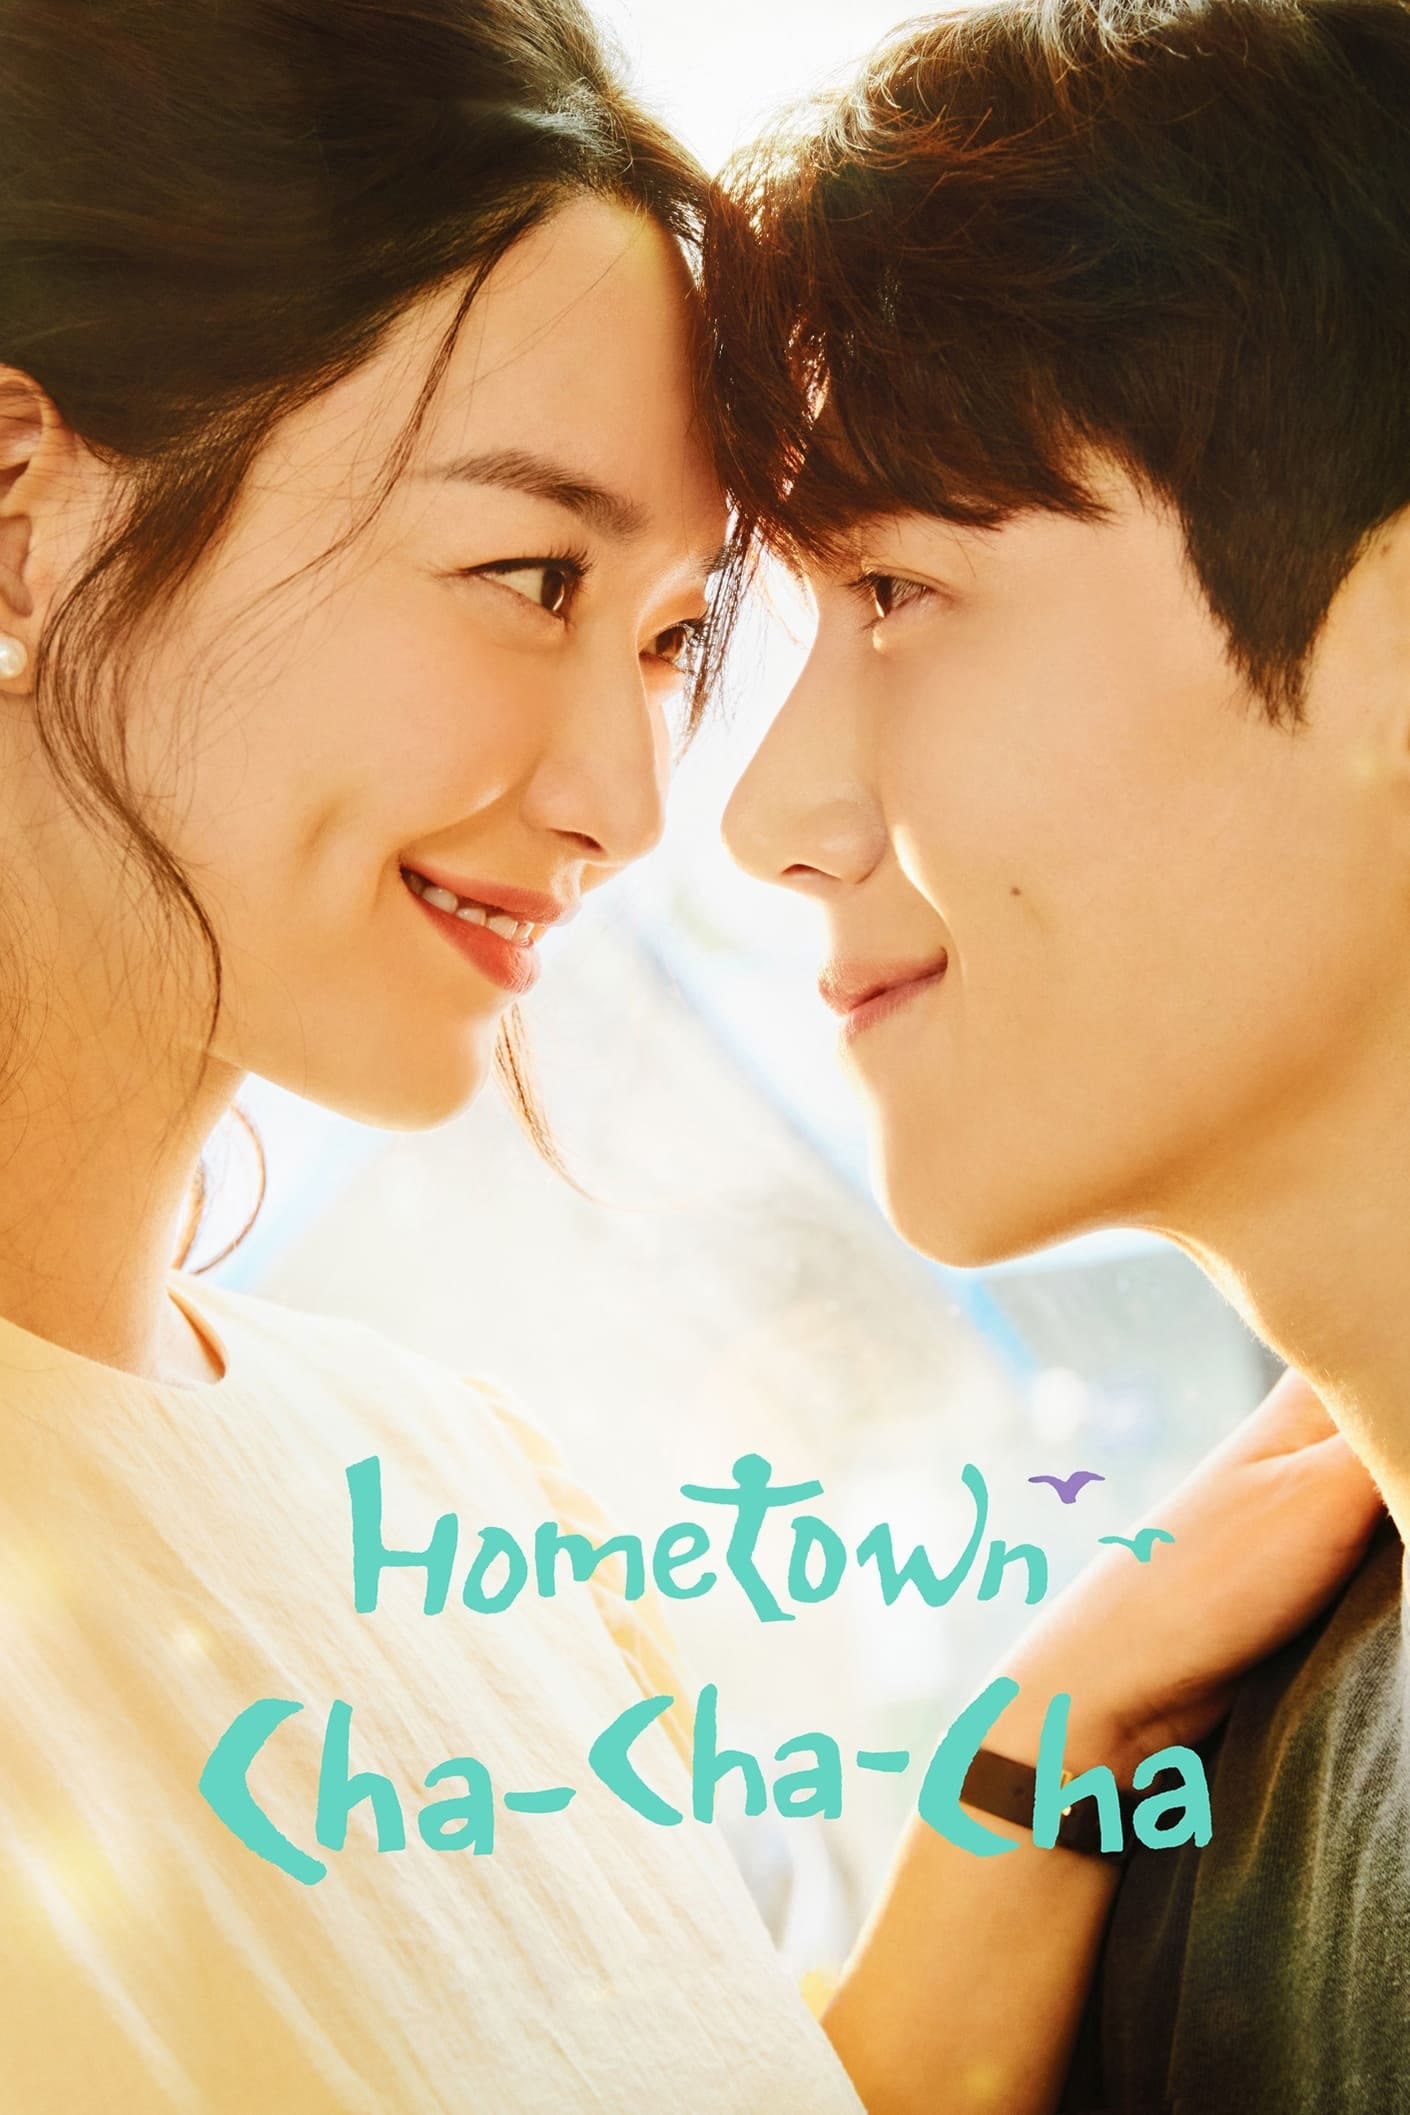 Hometown Cha-Cha-Cha (TV Series 2021– ) - IMDb